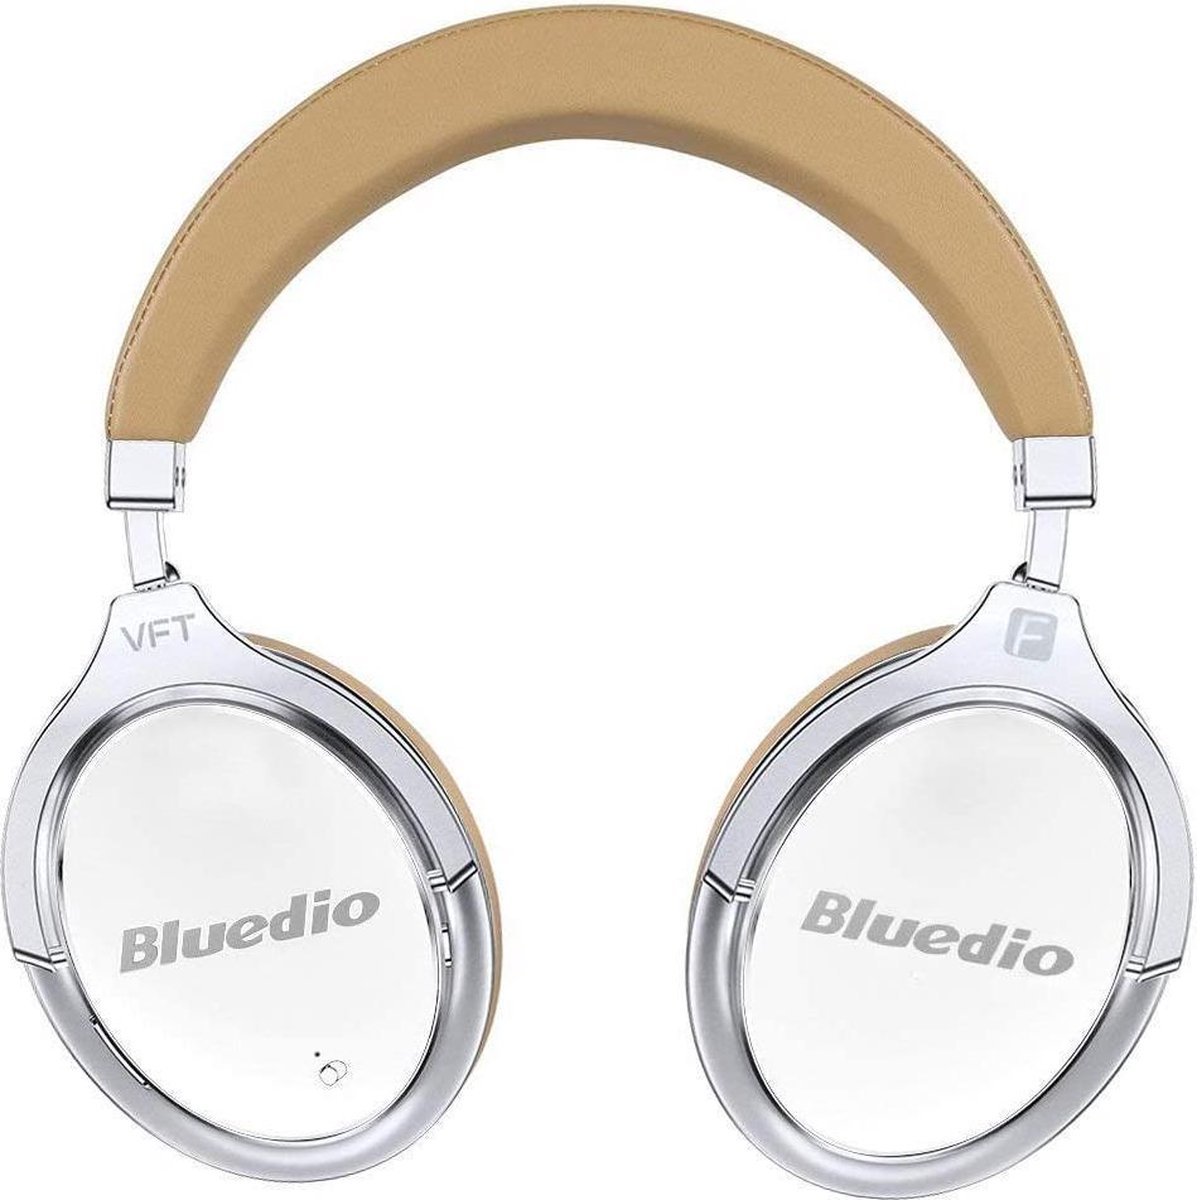 Bluedio F2 Bluetooth-hoofdtelefoon Actieve ruisonderdrukking, Bluedio F2 ANC draadloze hoofdtelefoon voor over het oor 180 ° rotatie, bedrade en draadloze hoofdtelefoon voor mobiele telefoon / tv / pc - Wit